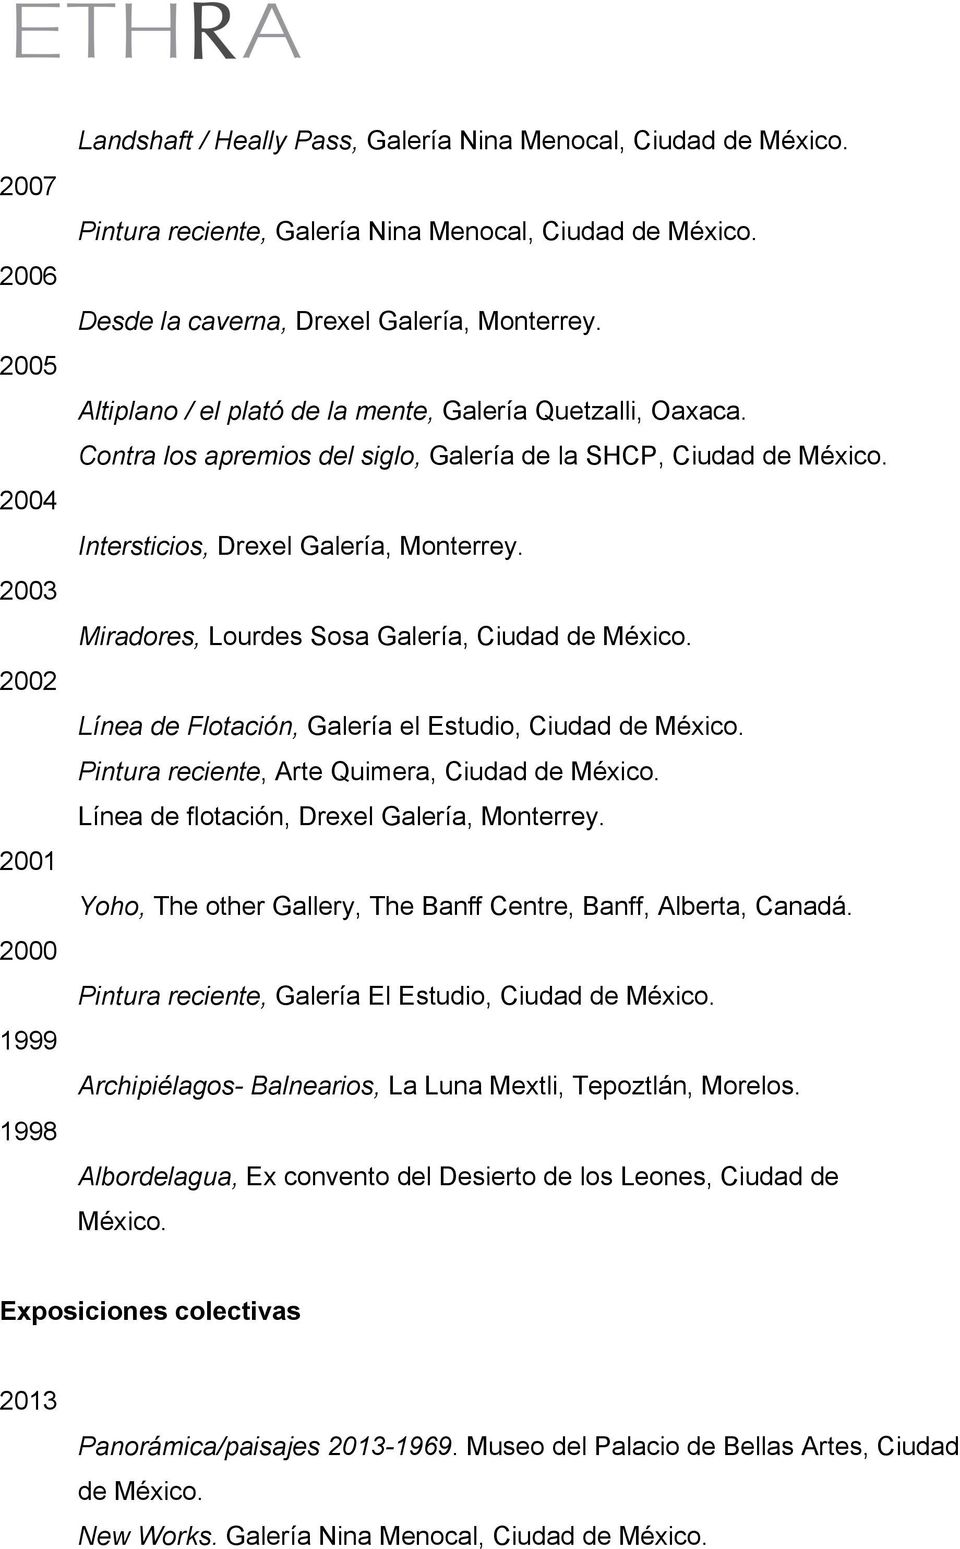 Miradores, Lourdes Sosa Galería, Ciudad de Línea de Flotación, Galería el Estudio, Ciudad de Pintura reciente, Arte Quimera, Ciudad de Línea de flotación, Drexel Galería, Monterrey.